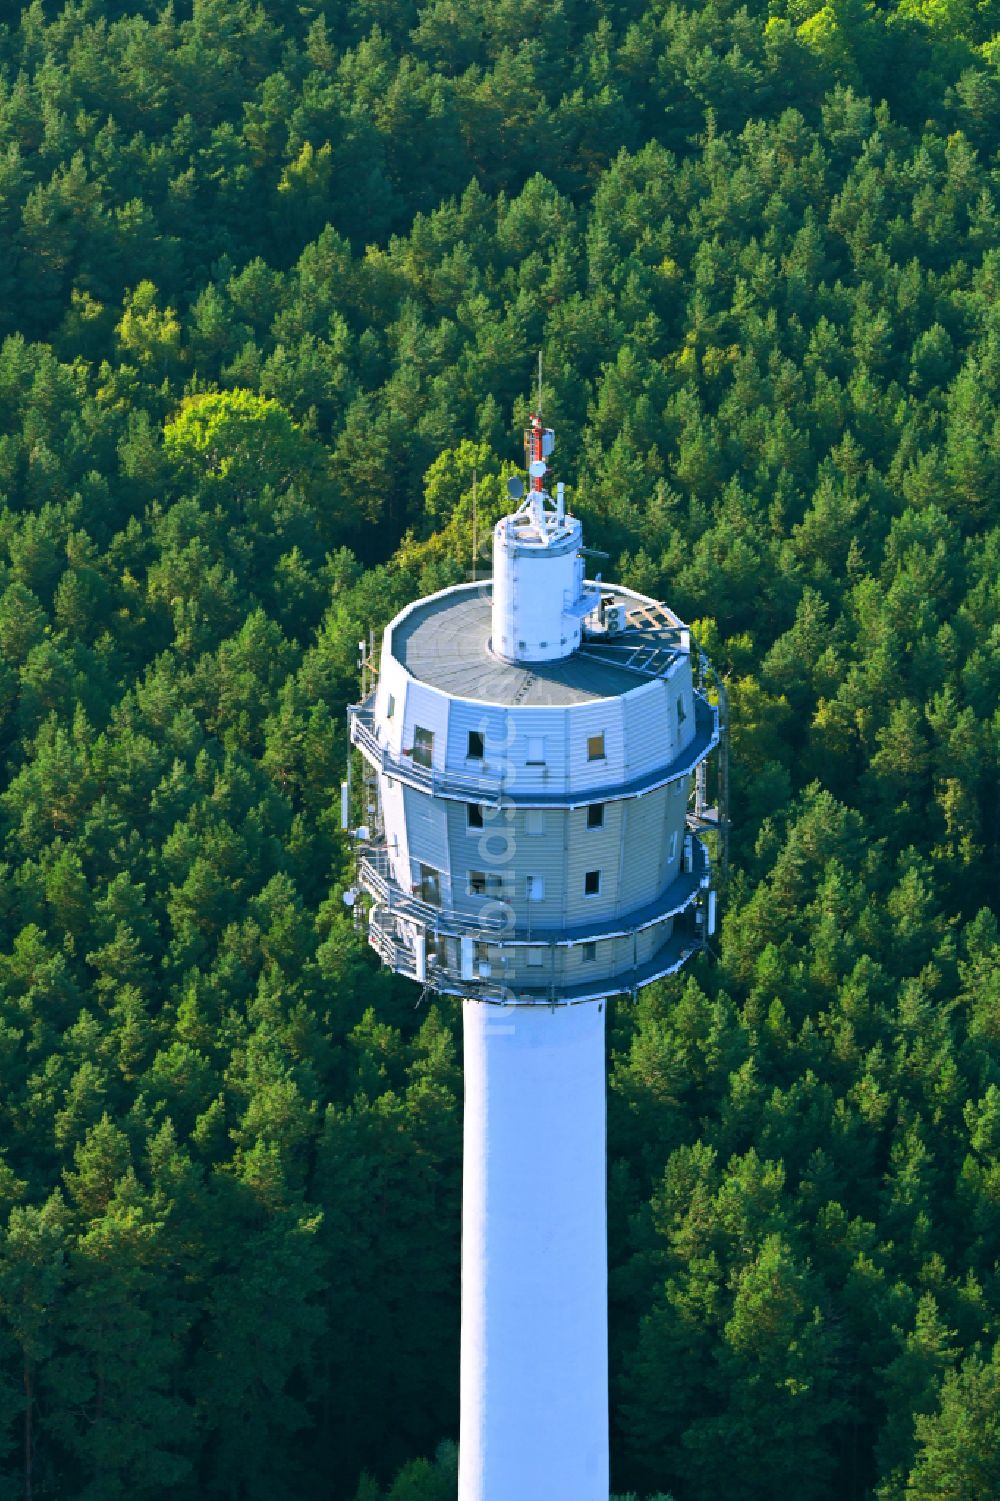 Blumberg von oben - Funkturm und Sendeanlage als Grundnetzsender in Birkholzaue im Bundesland Brandenburg